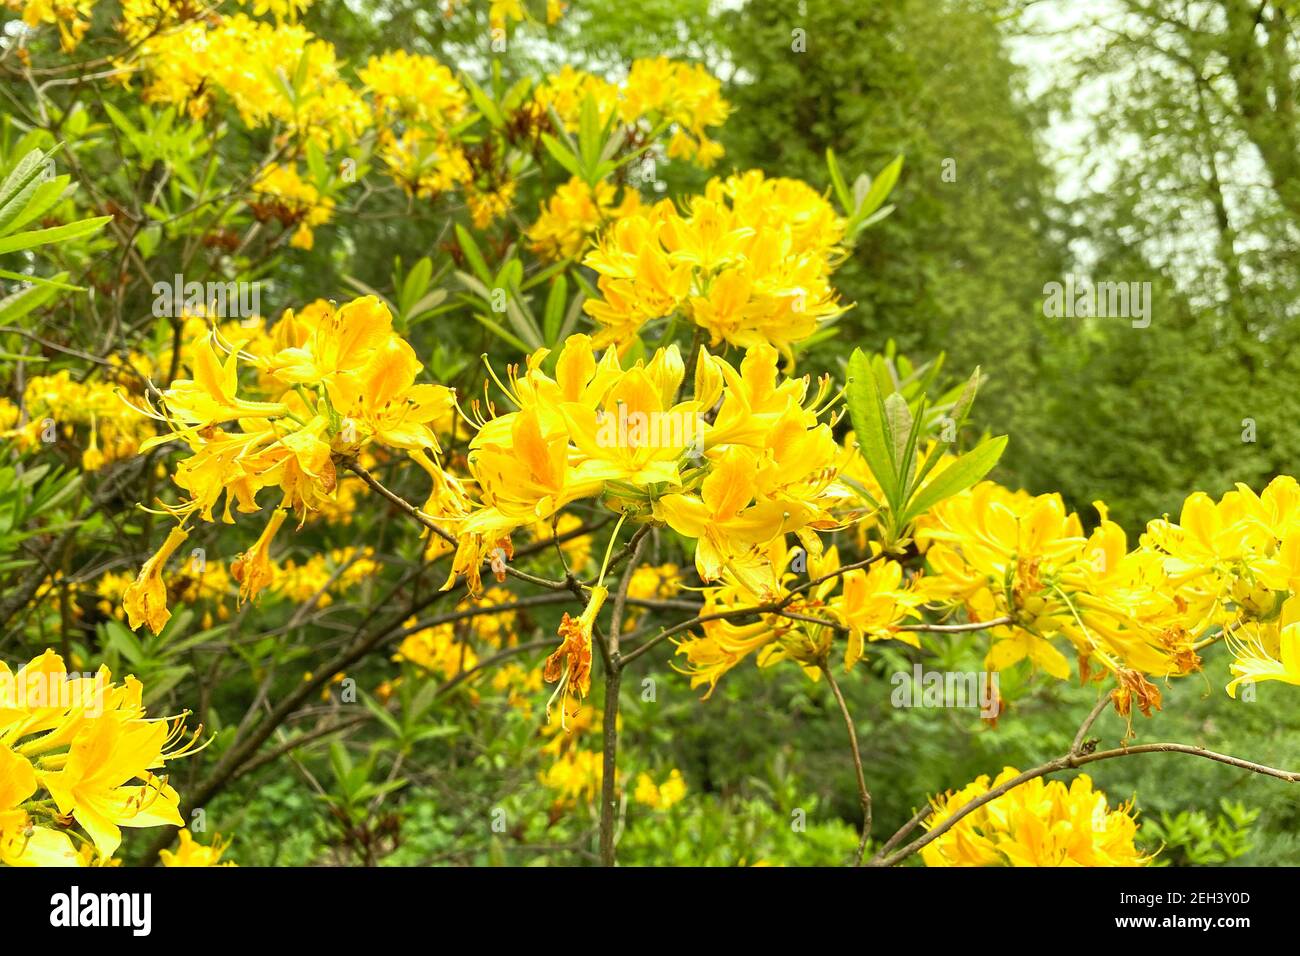 Les fleurs de Rhododendron fleurissent dans le jardin de printemps, à proximité. Des fleurs jaunes douces poussent dans le parc de la ville. Aménagement paysager et décoration au printemps Banque D'Images